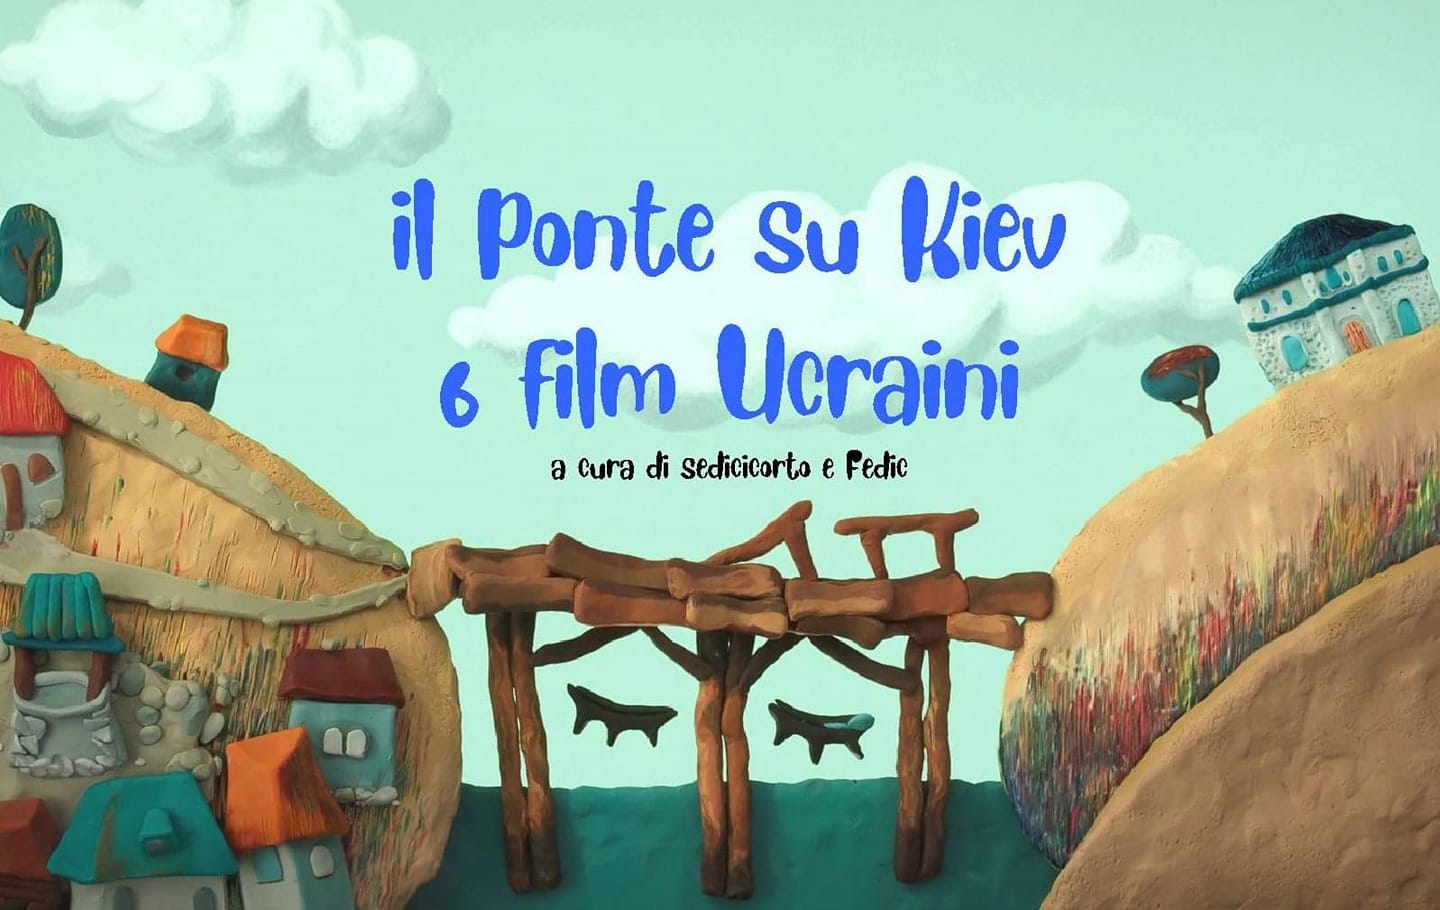 Il Ponte su Kiev, 6 cortometraggi d’animazione ucraini a cura di Sedicicorto